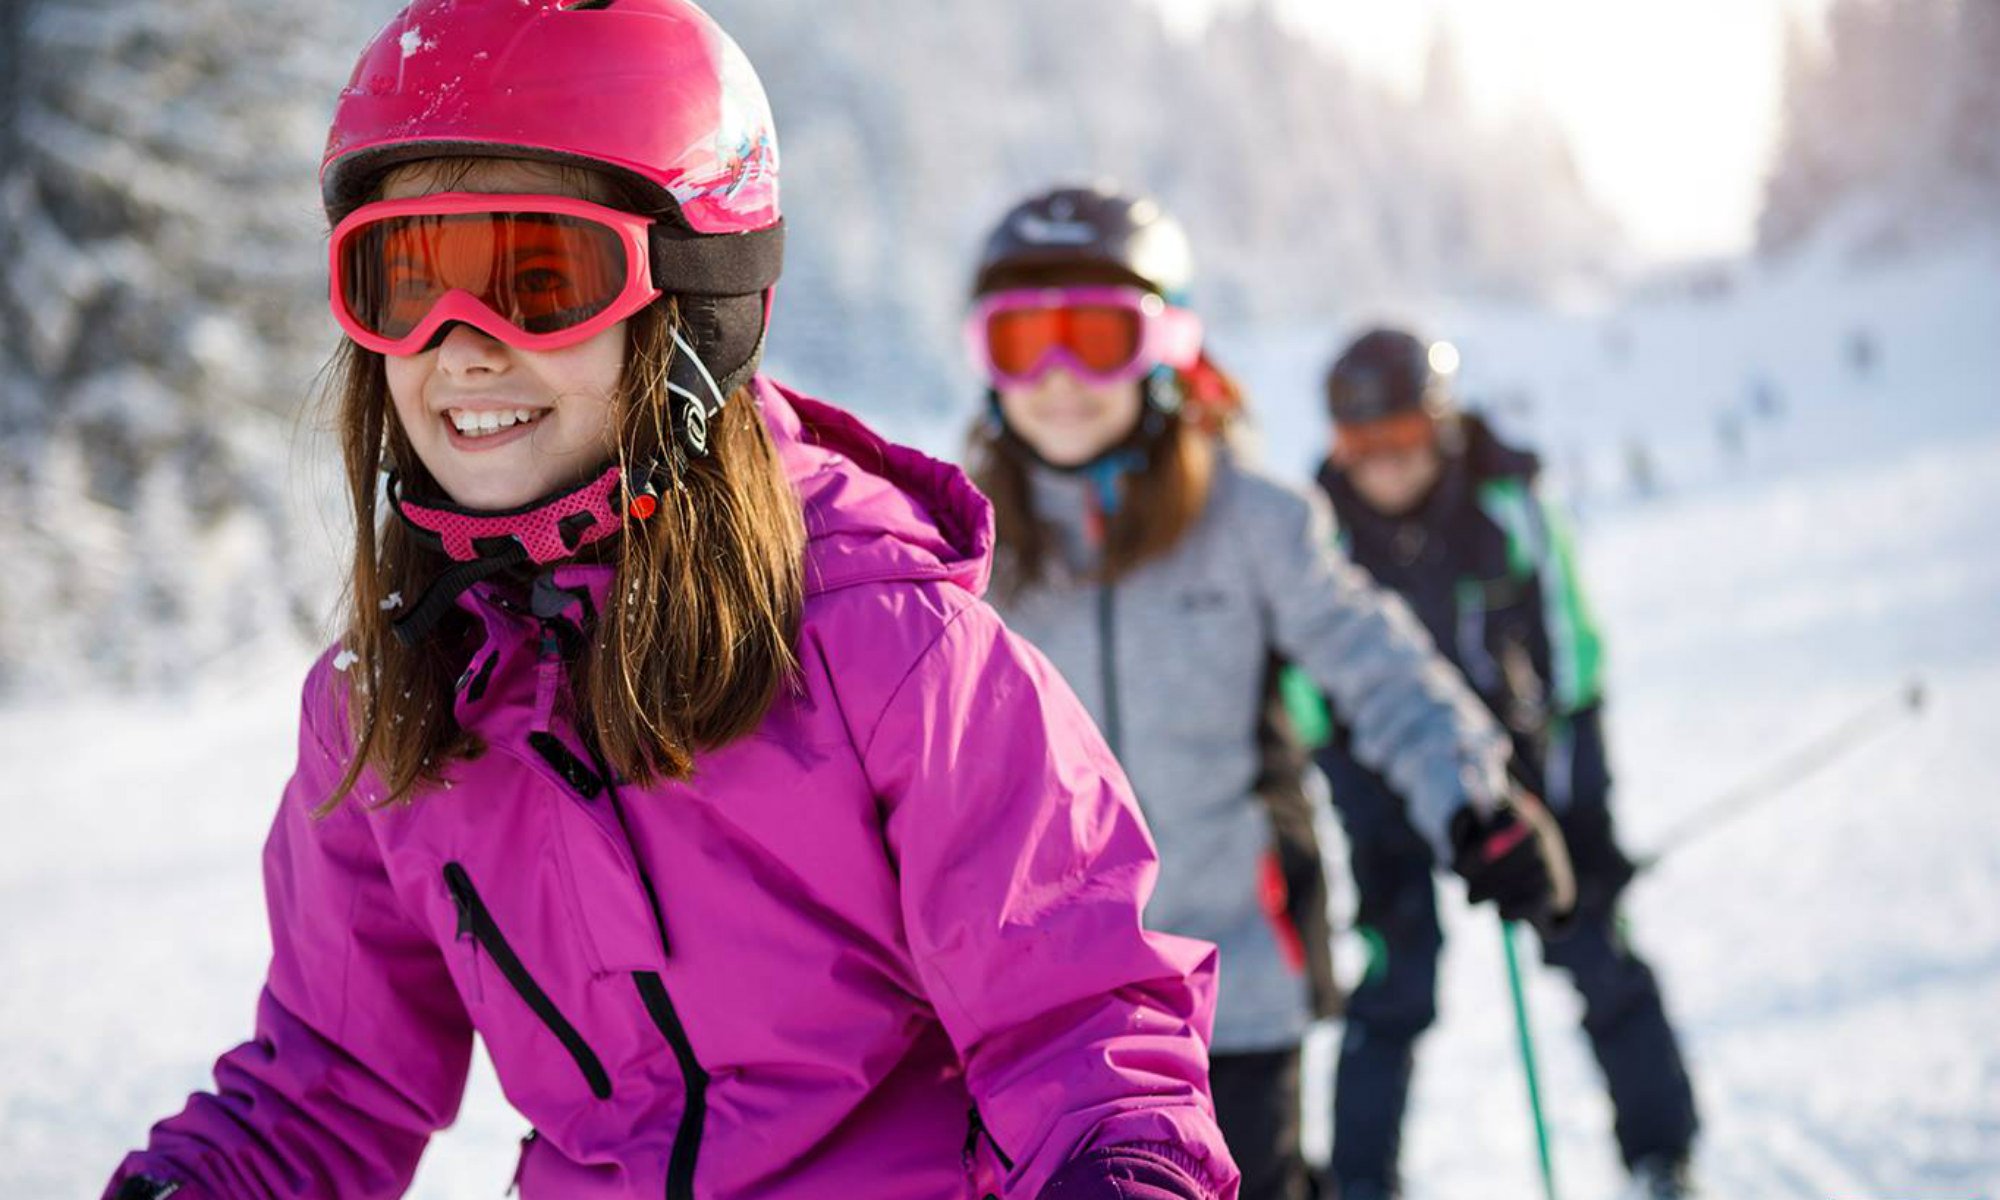 Pijnboom haak Vet Leren skiën in de top 5 goedkope skigebieden